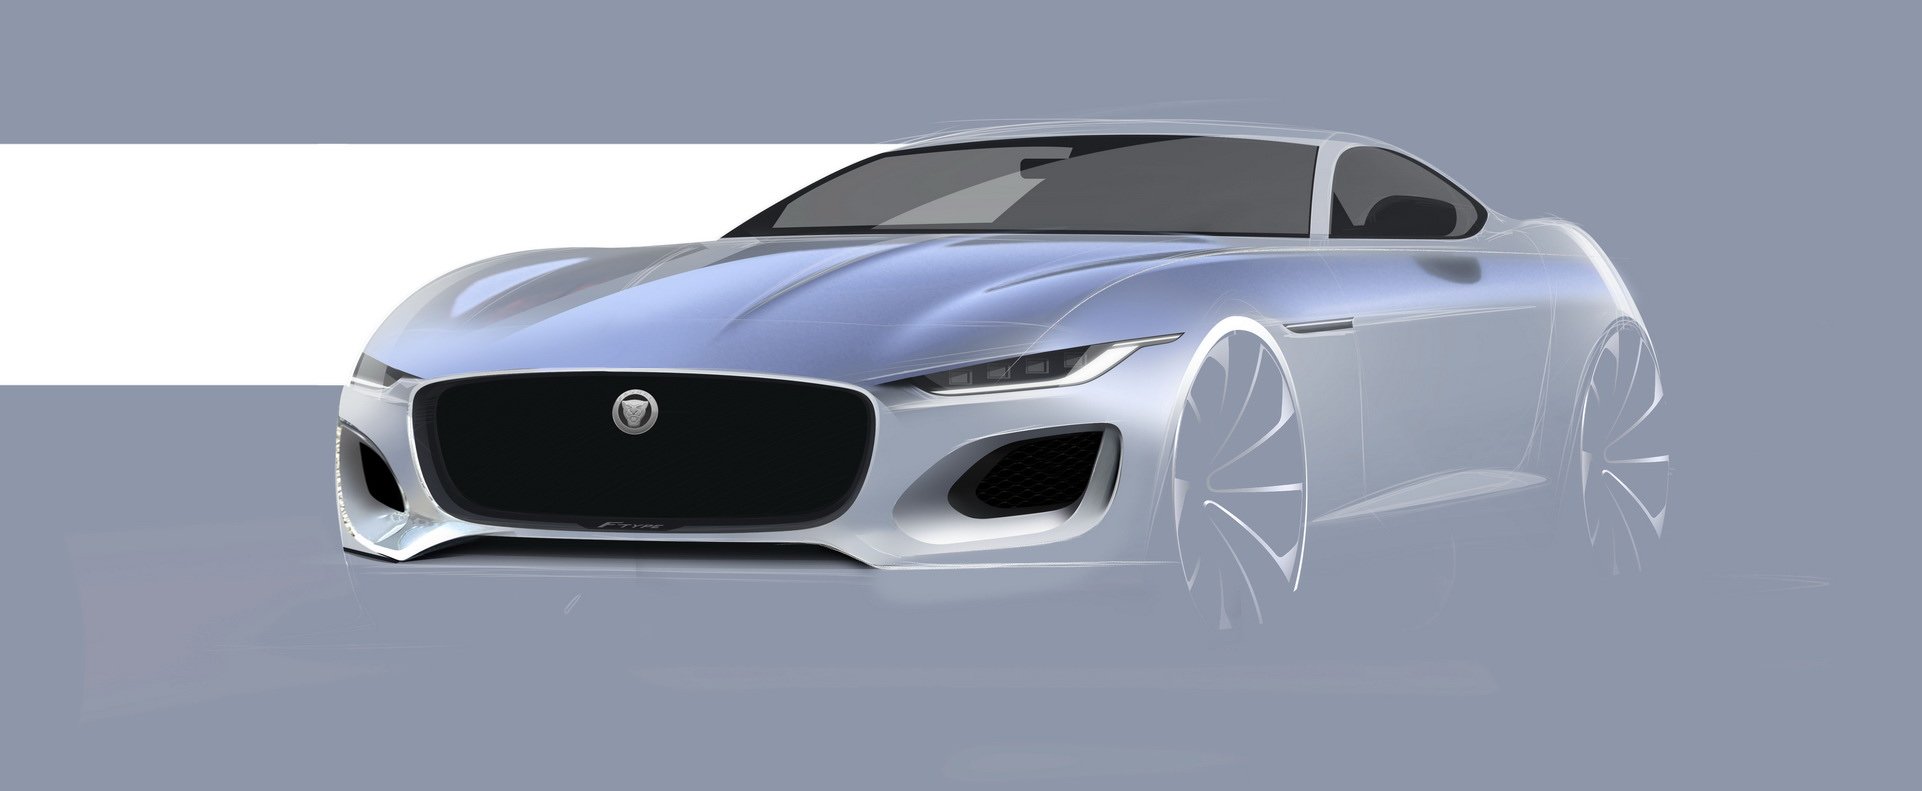 2021 Jaguar F Type Review Autoevolution